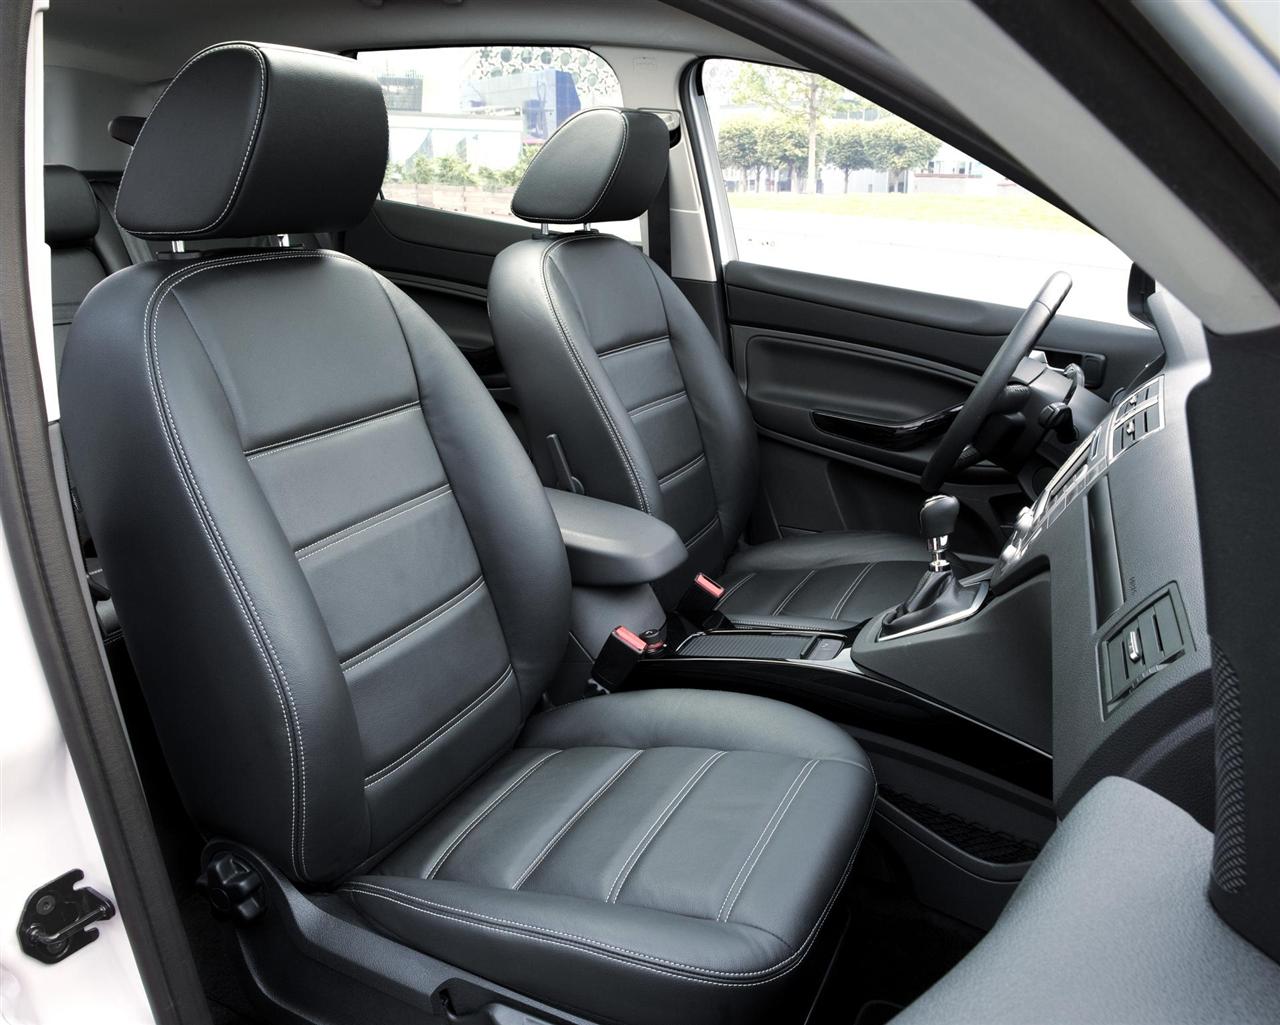 Ford-Kuga-Titanium-S 2012-Interior-Images-2